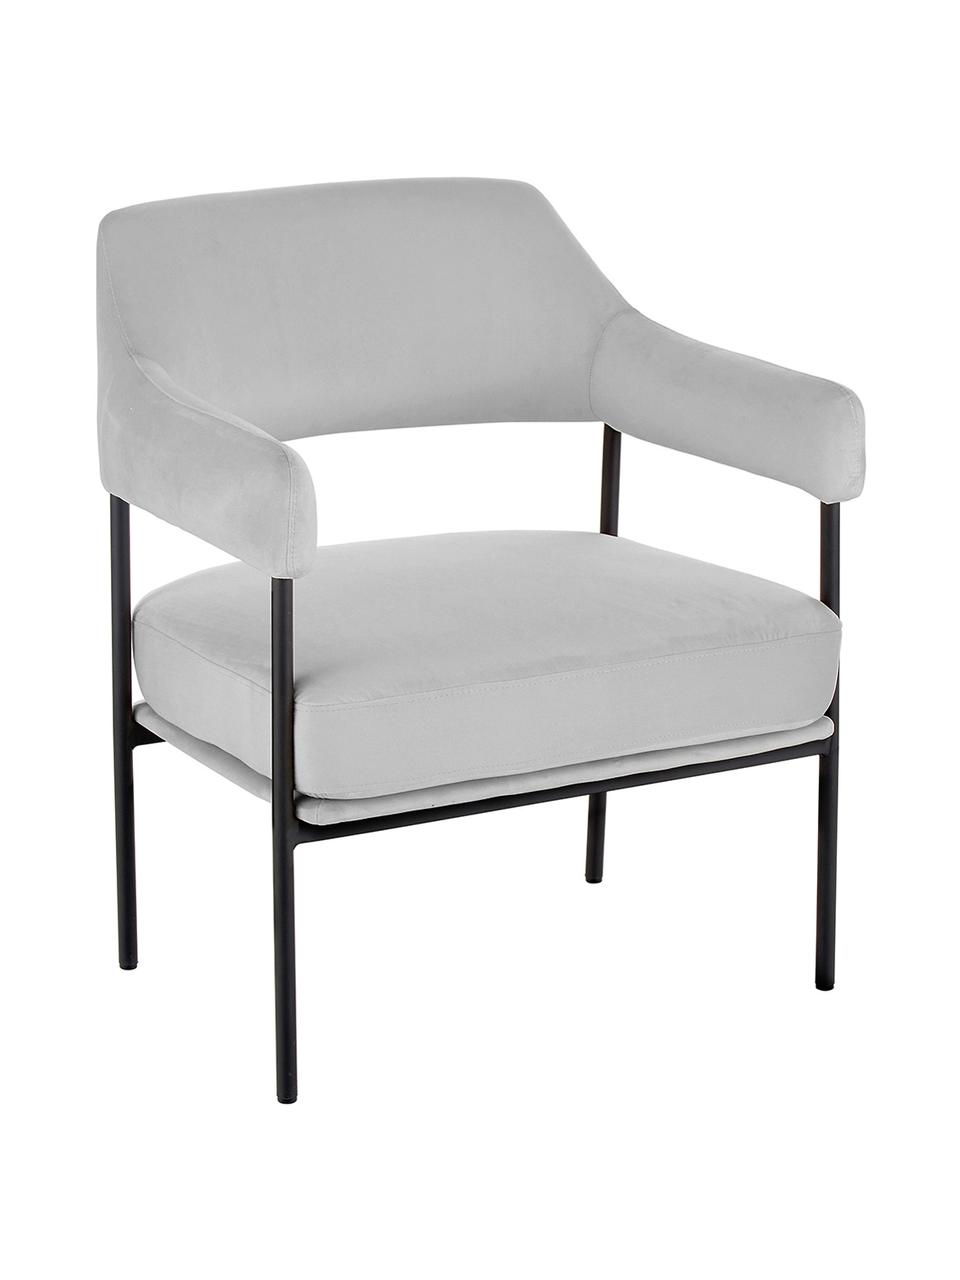 Fluwelen lounge fauteuil Zoe, Bekleding: fluweel (polyester), Frame: gepoedercoat metaal, Grijs, B 67 x D 66 cm